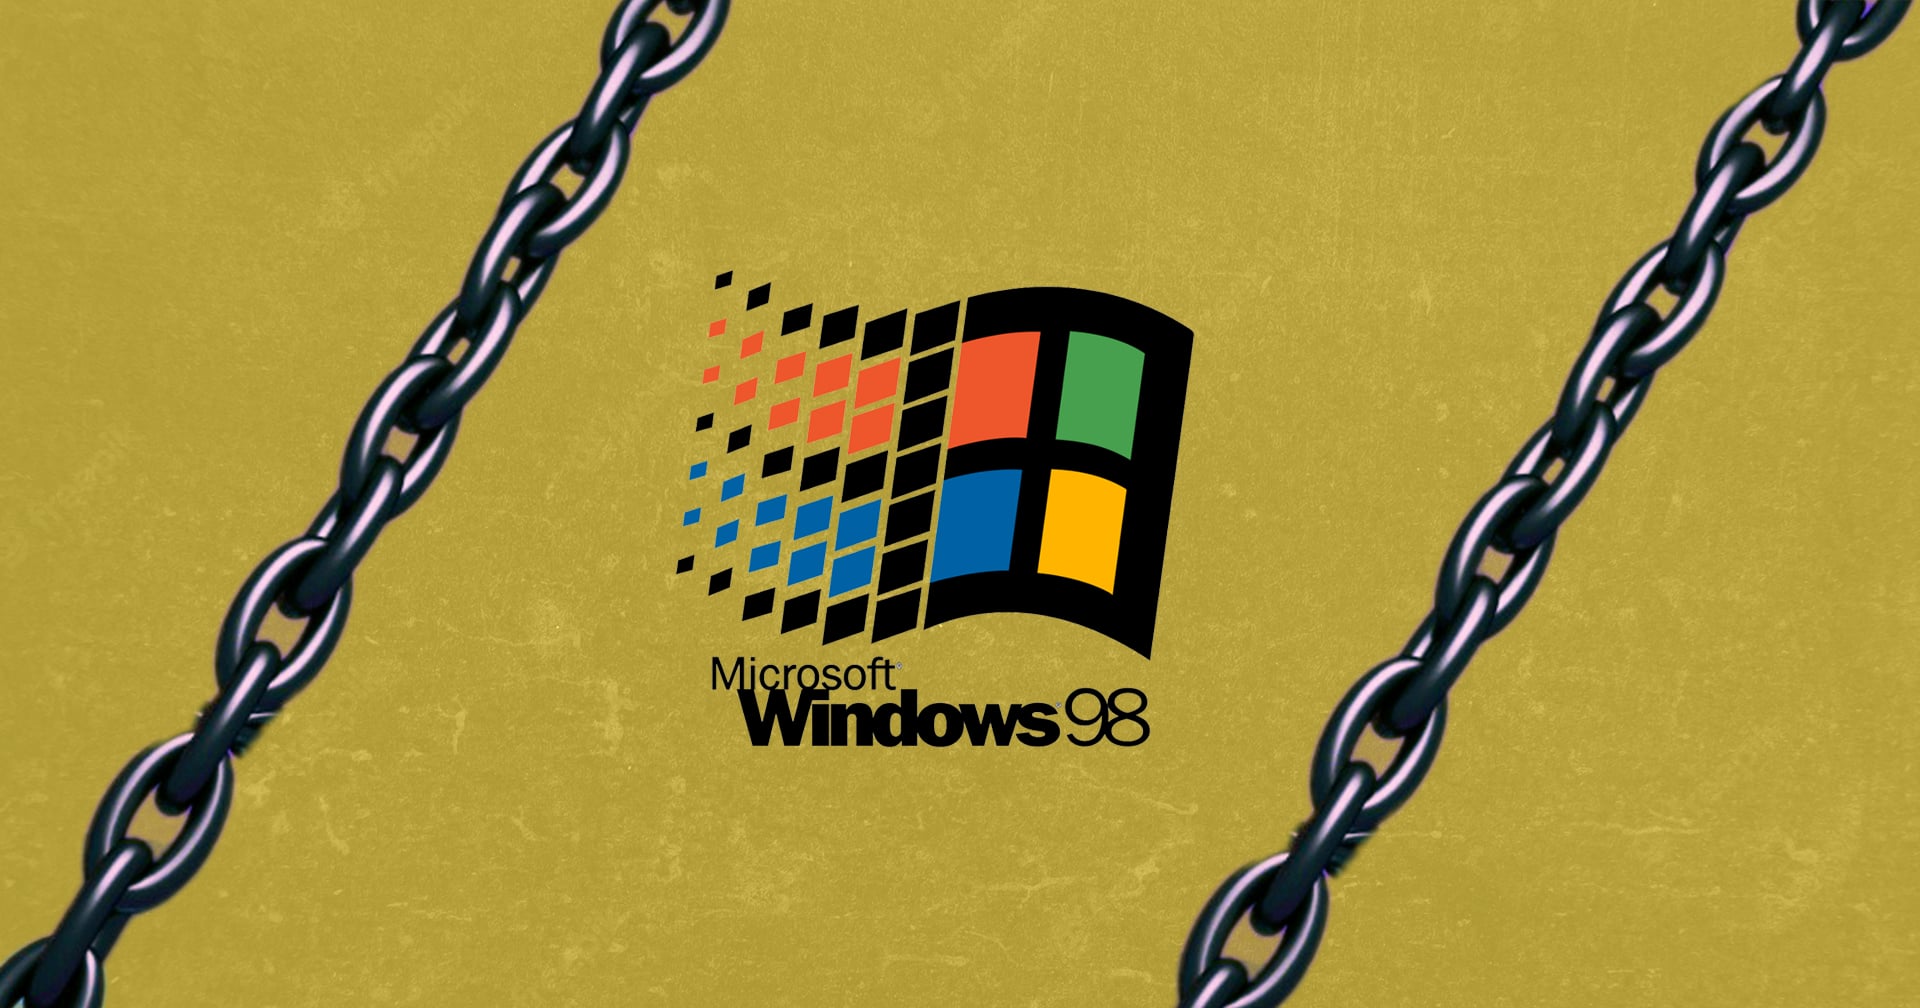 ย้อนรอยอดีต คดีผูกขาด Microsoft เมื่อปี 1998